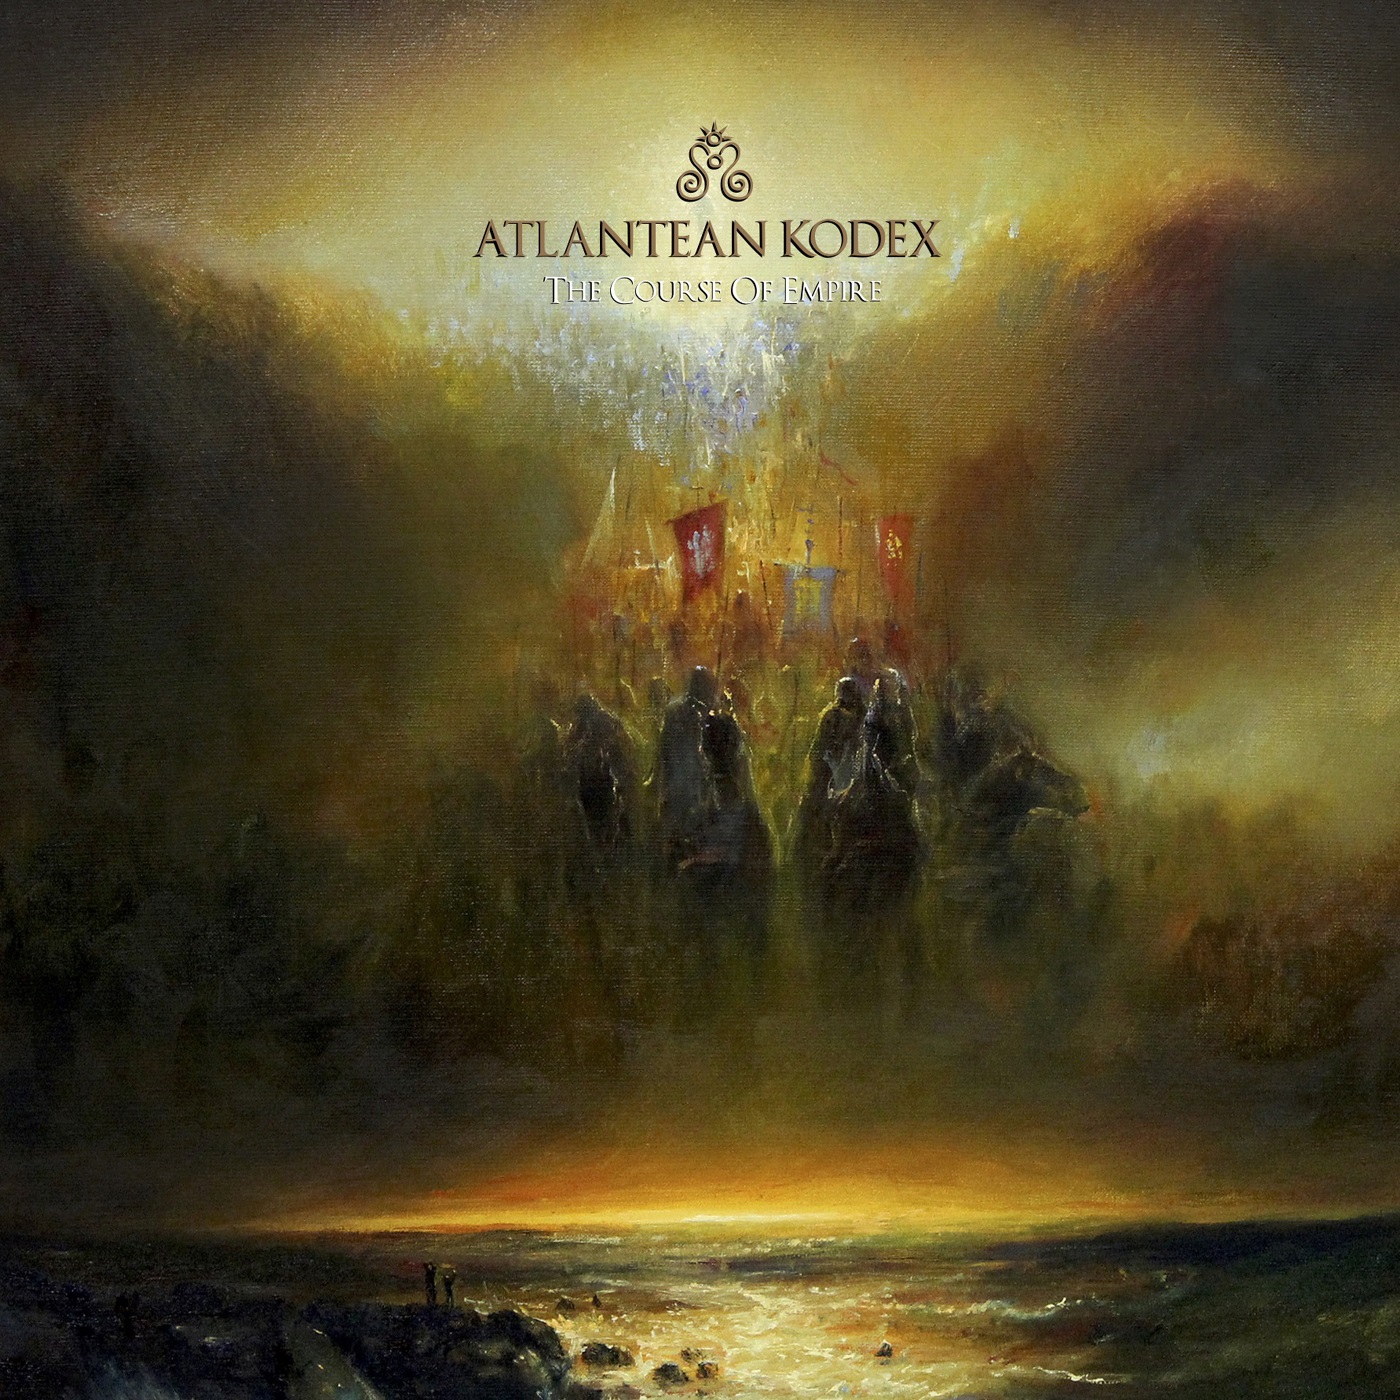 atlantean-kodex_course-of-empire